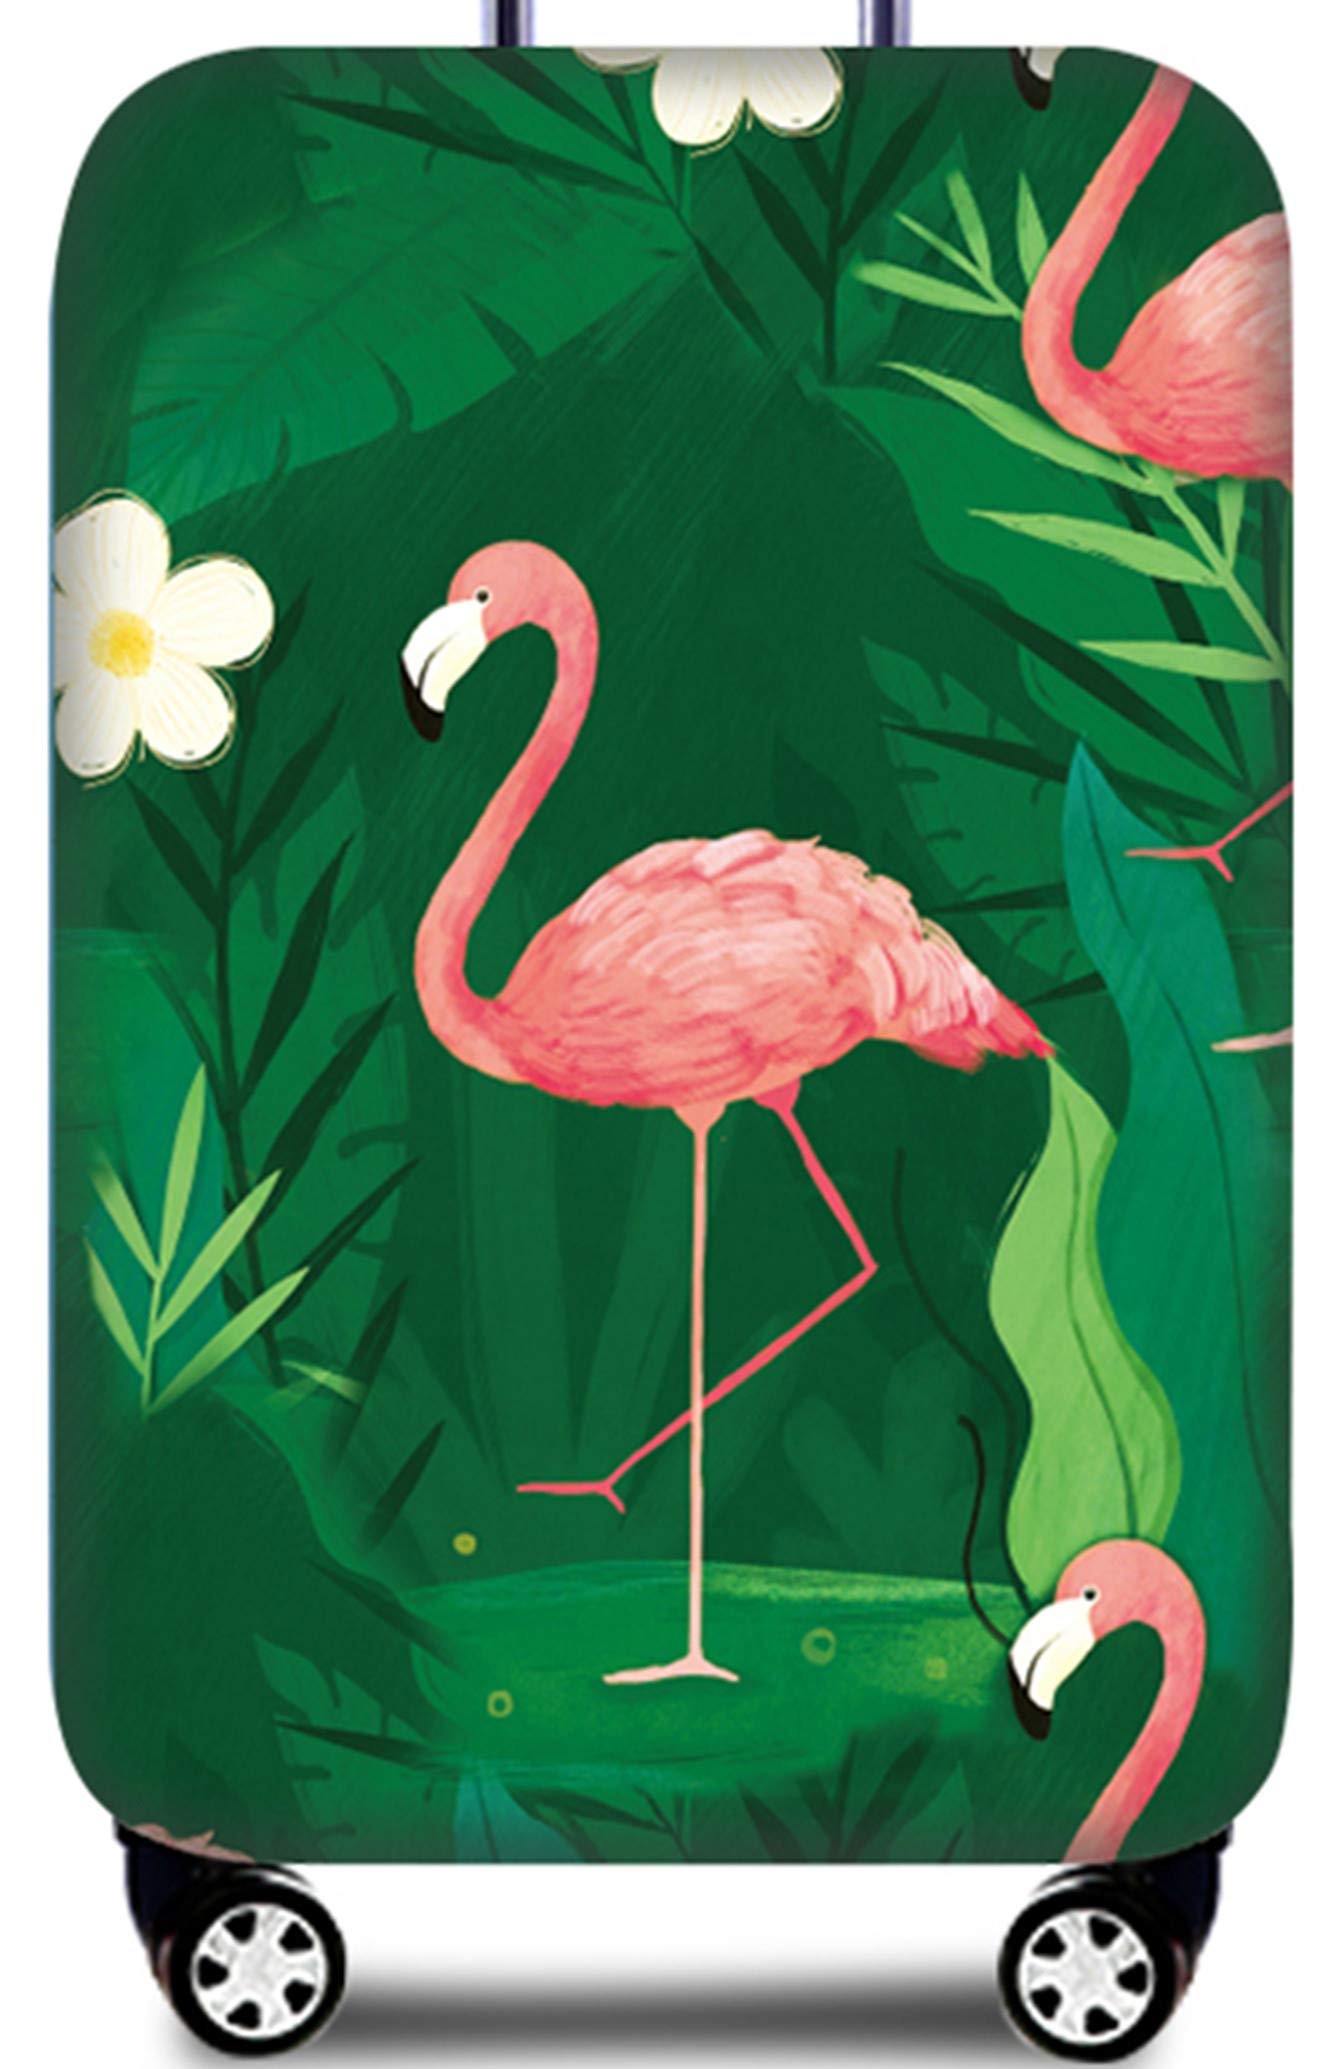 Hayisugal Kofferschutzhülle elastische Kofferschutzbezug extra dick Gepäckschutz Kofferbezug Kofferhülle Luggage Cover Koffer Hülle Schutzbezug mit Reißverschluss, Flamingo-12, L (25-28 Zoll)